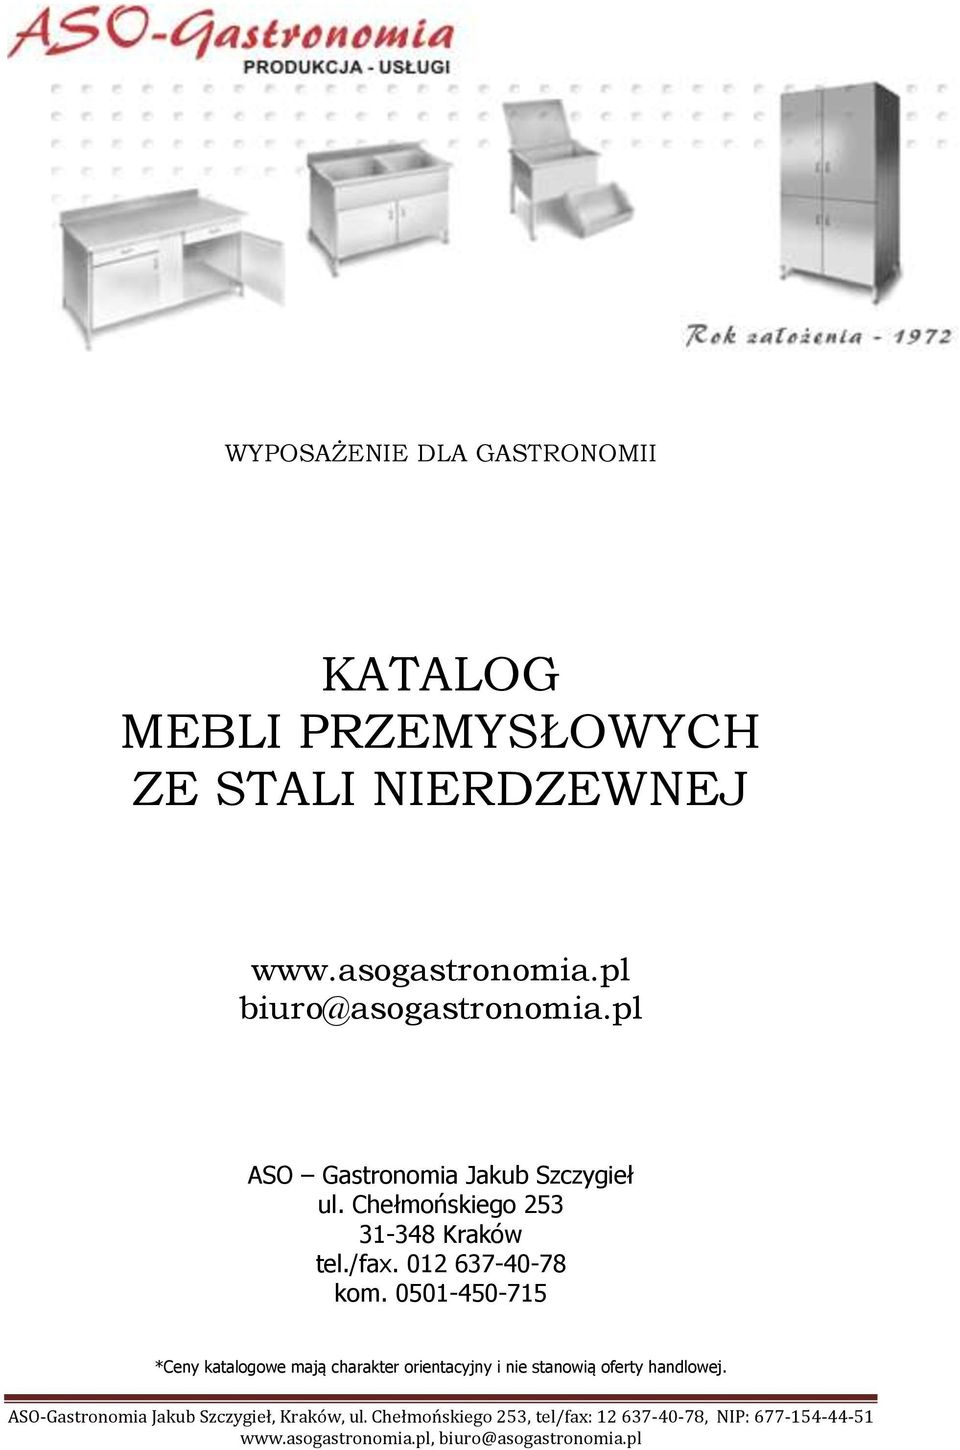 Chełmońskiego 253 31-348 Kraków tel./fax. 012 637-40-78 kom.